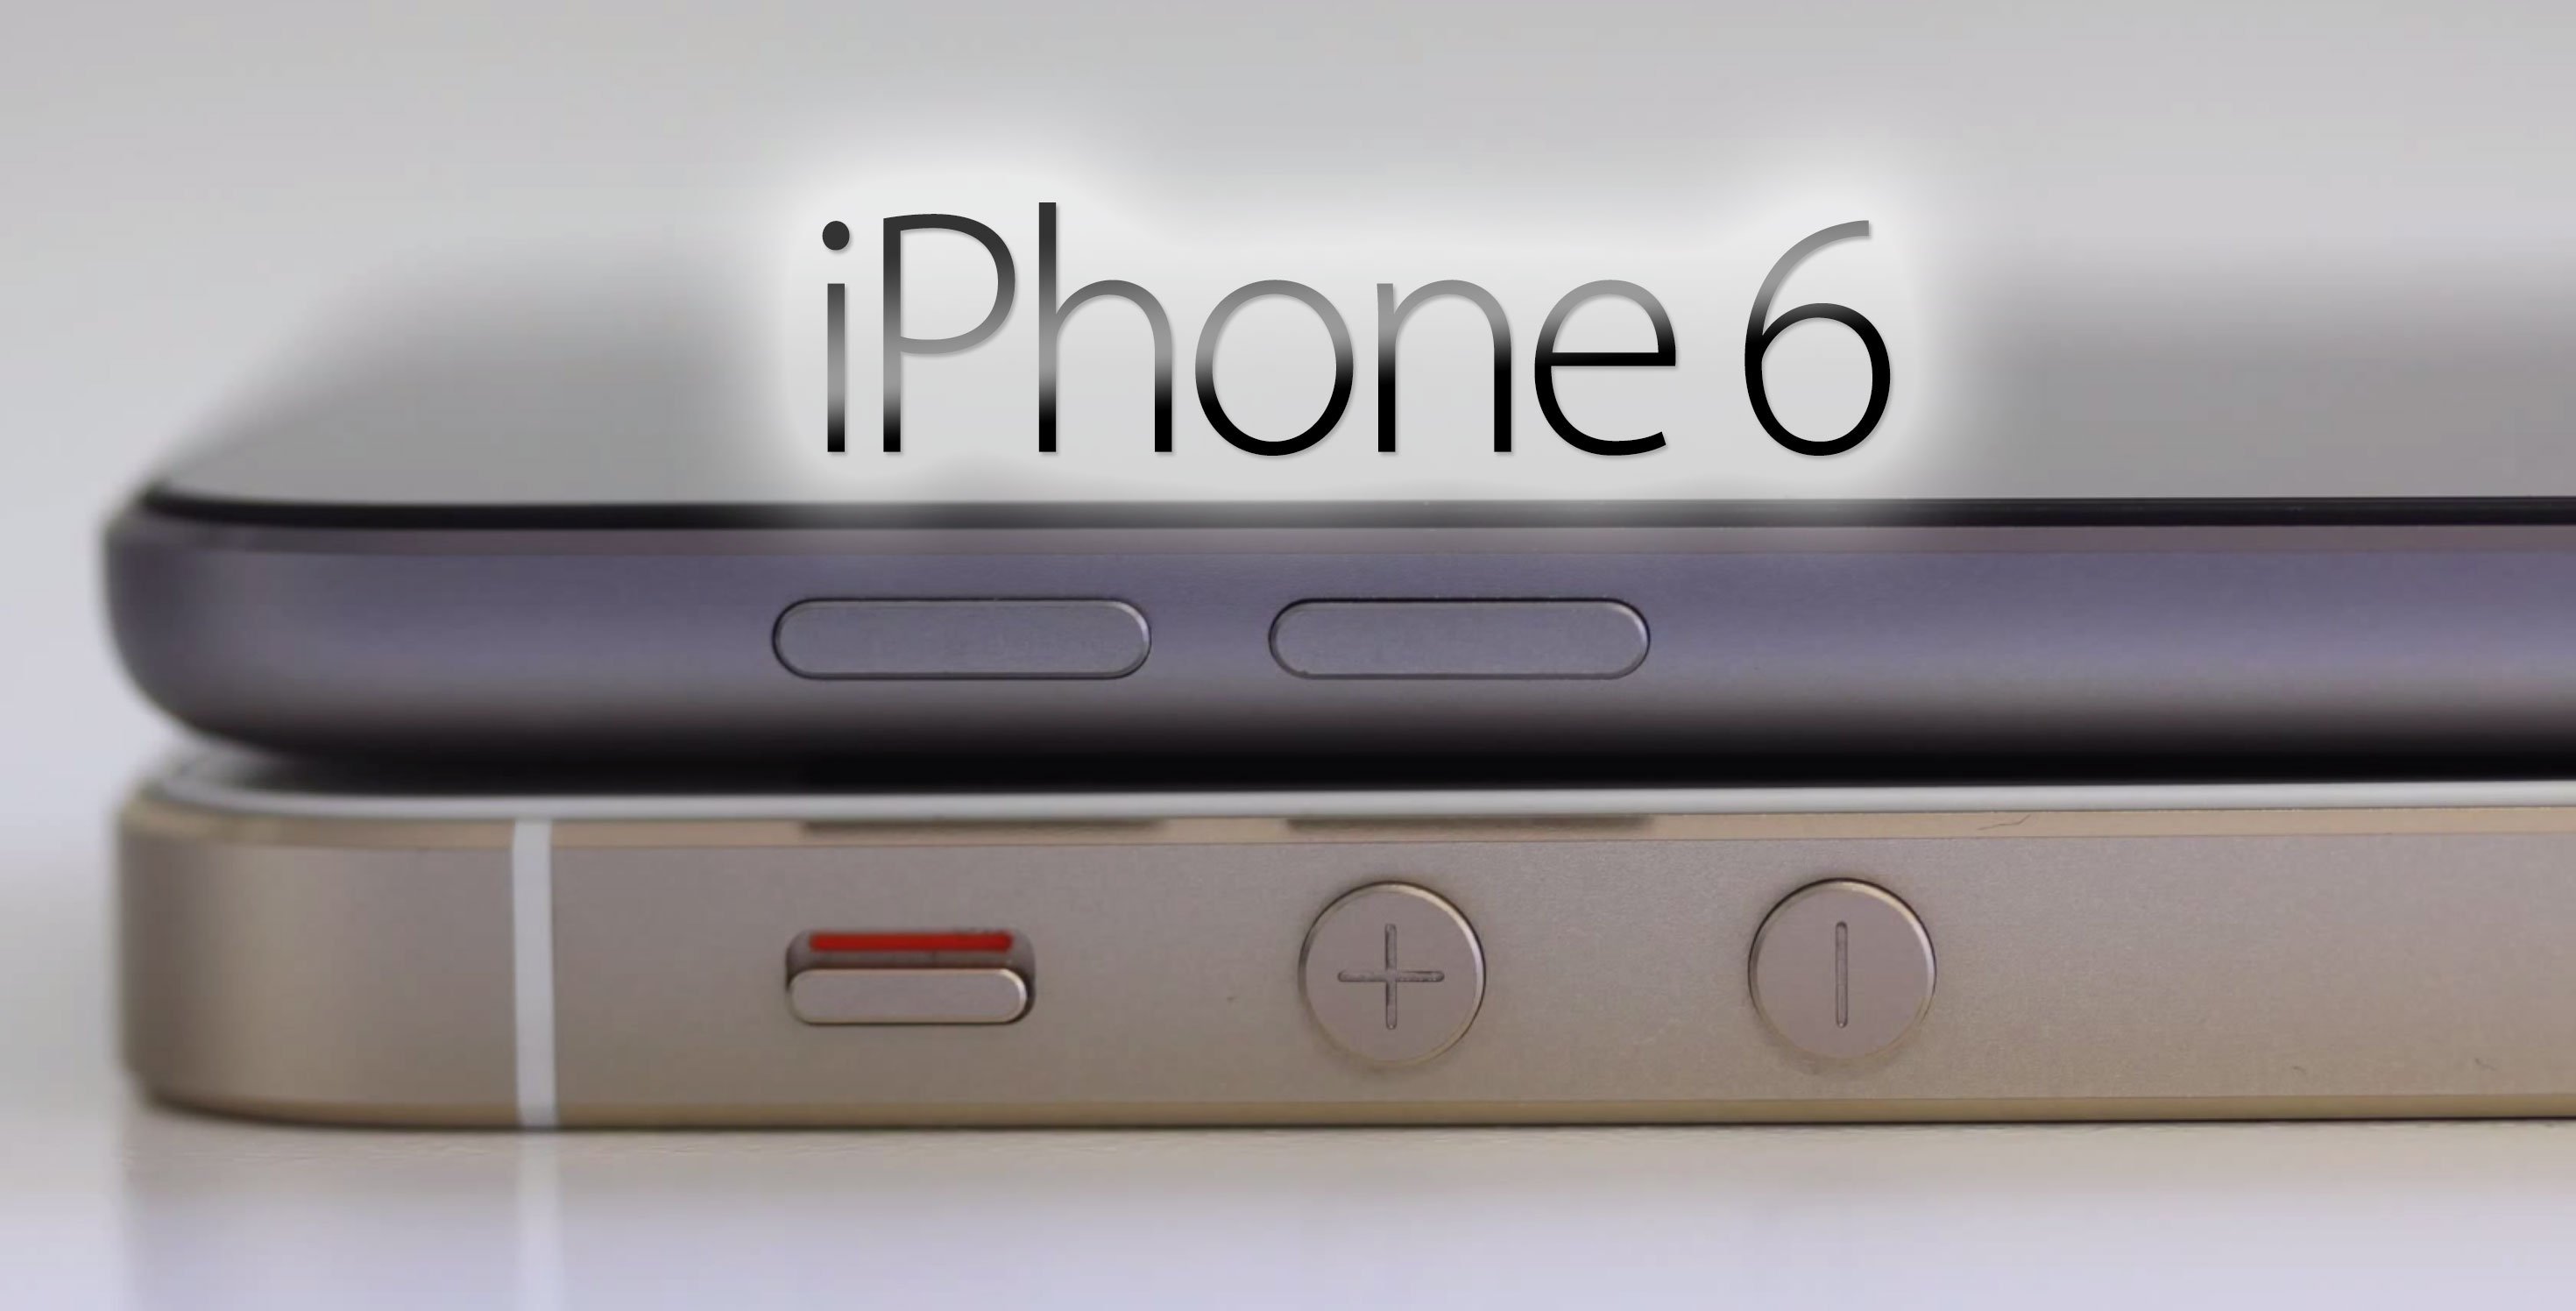 iPhone 6 kommt früher als erwartet - 4,7" iPhone 6 im August, 5,5" iPhone im September? 1